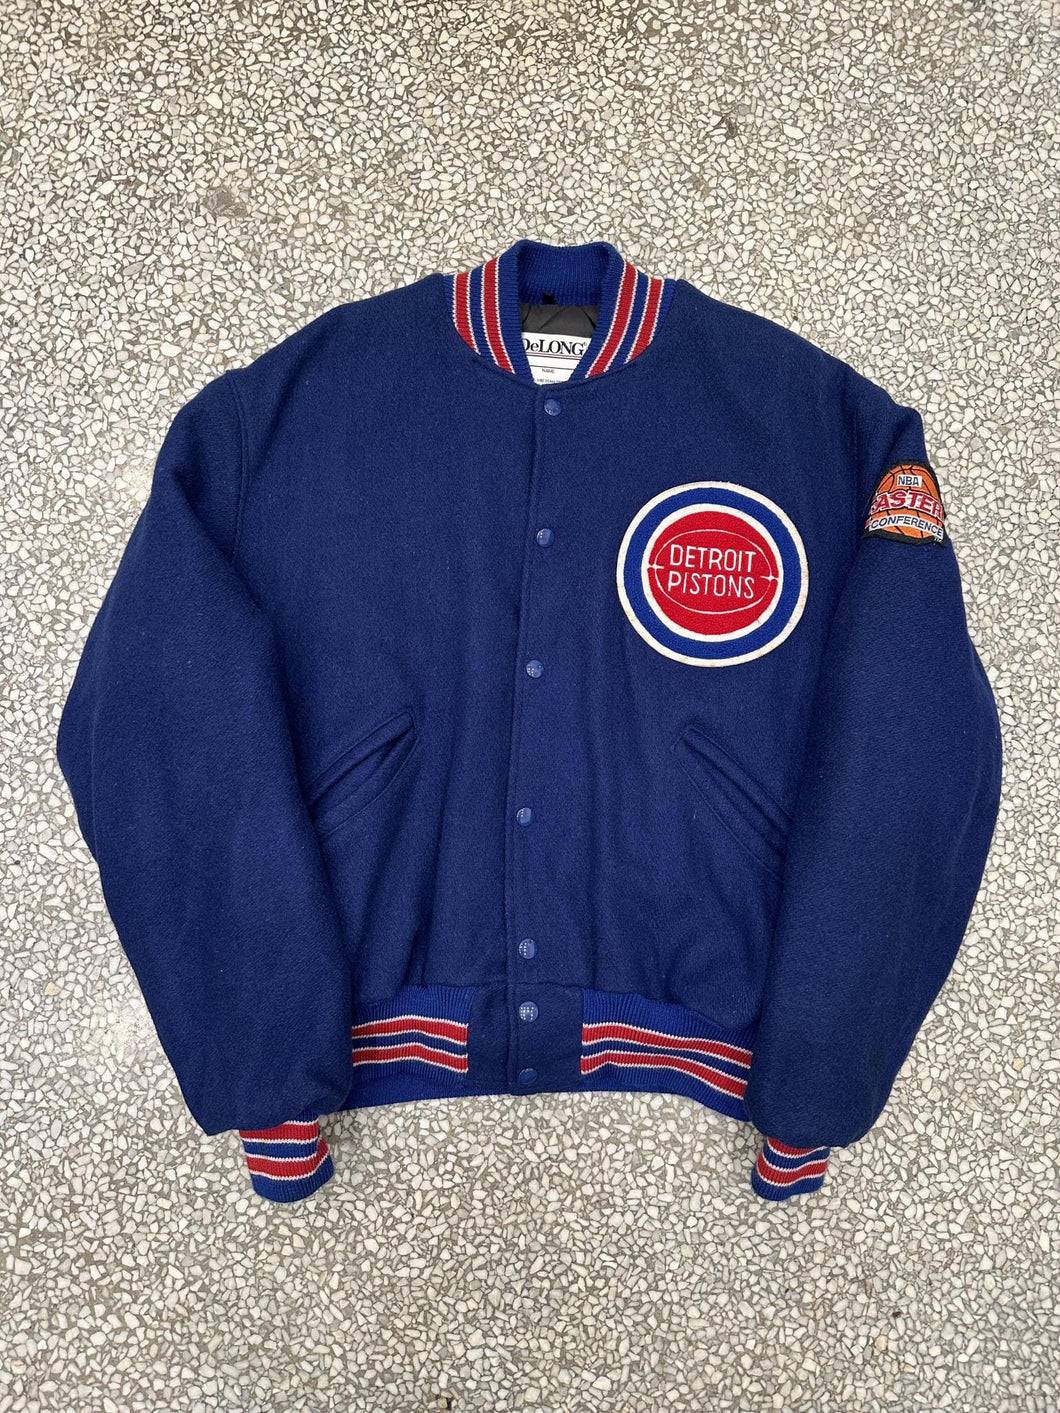 Detroit Pistons Vintage 90s DeLong Wool Varsity Bomber Jacket ABC Vintage 